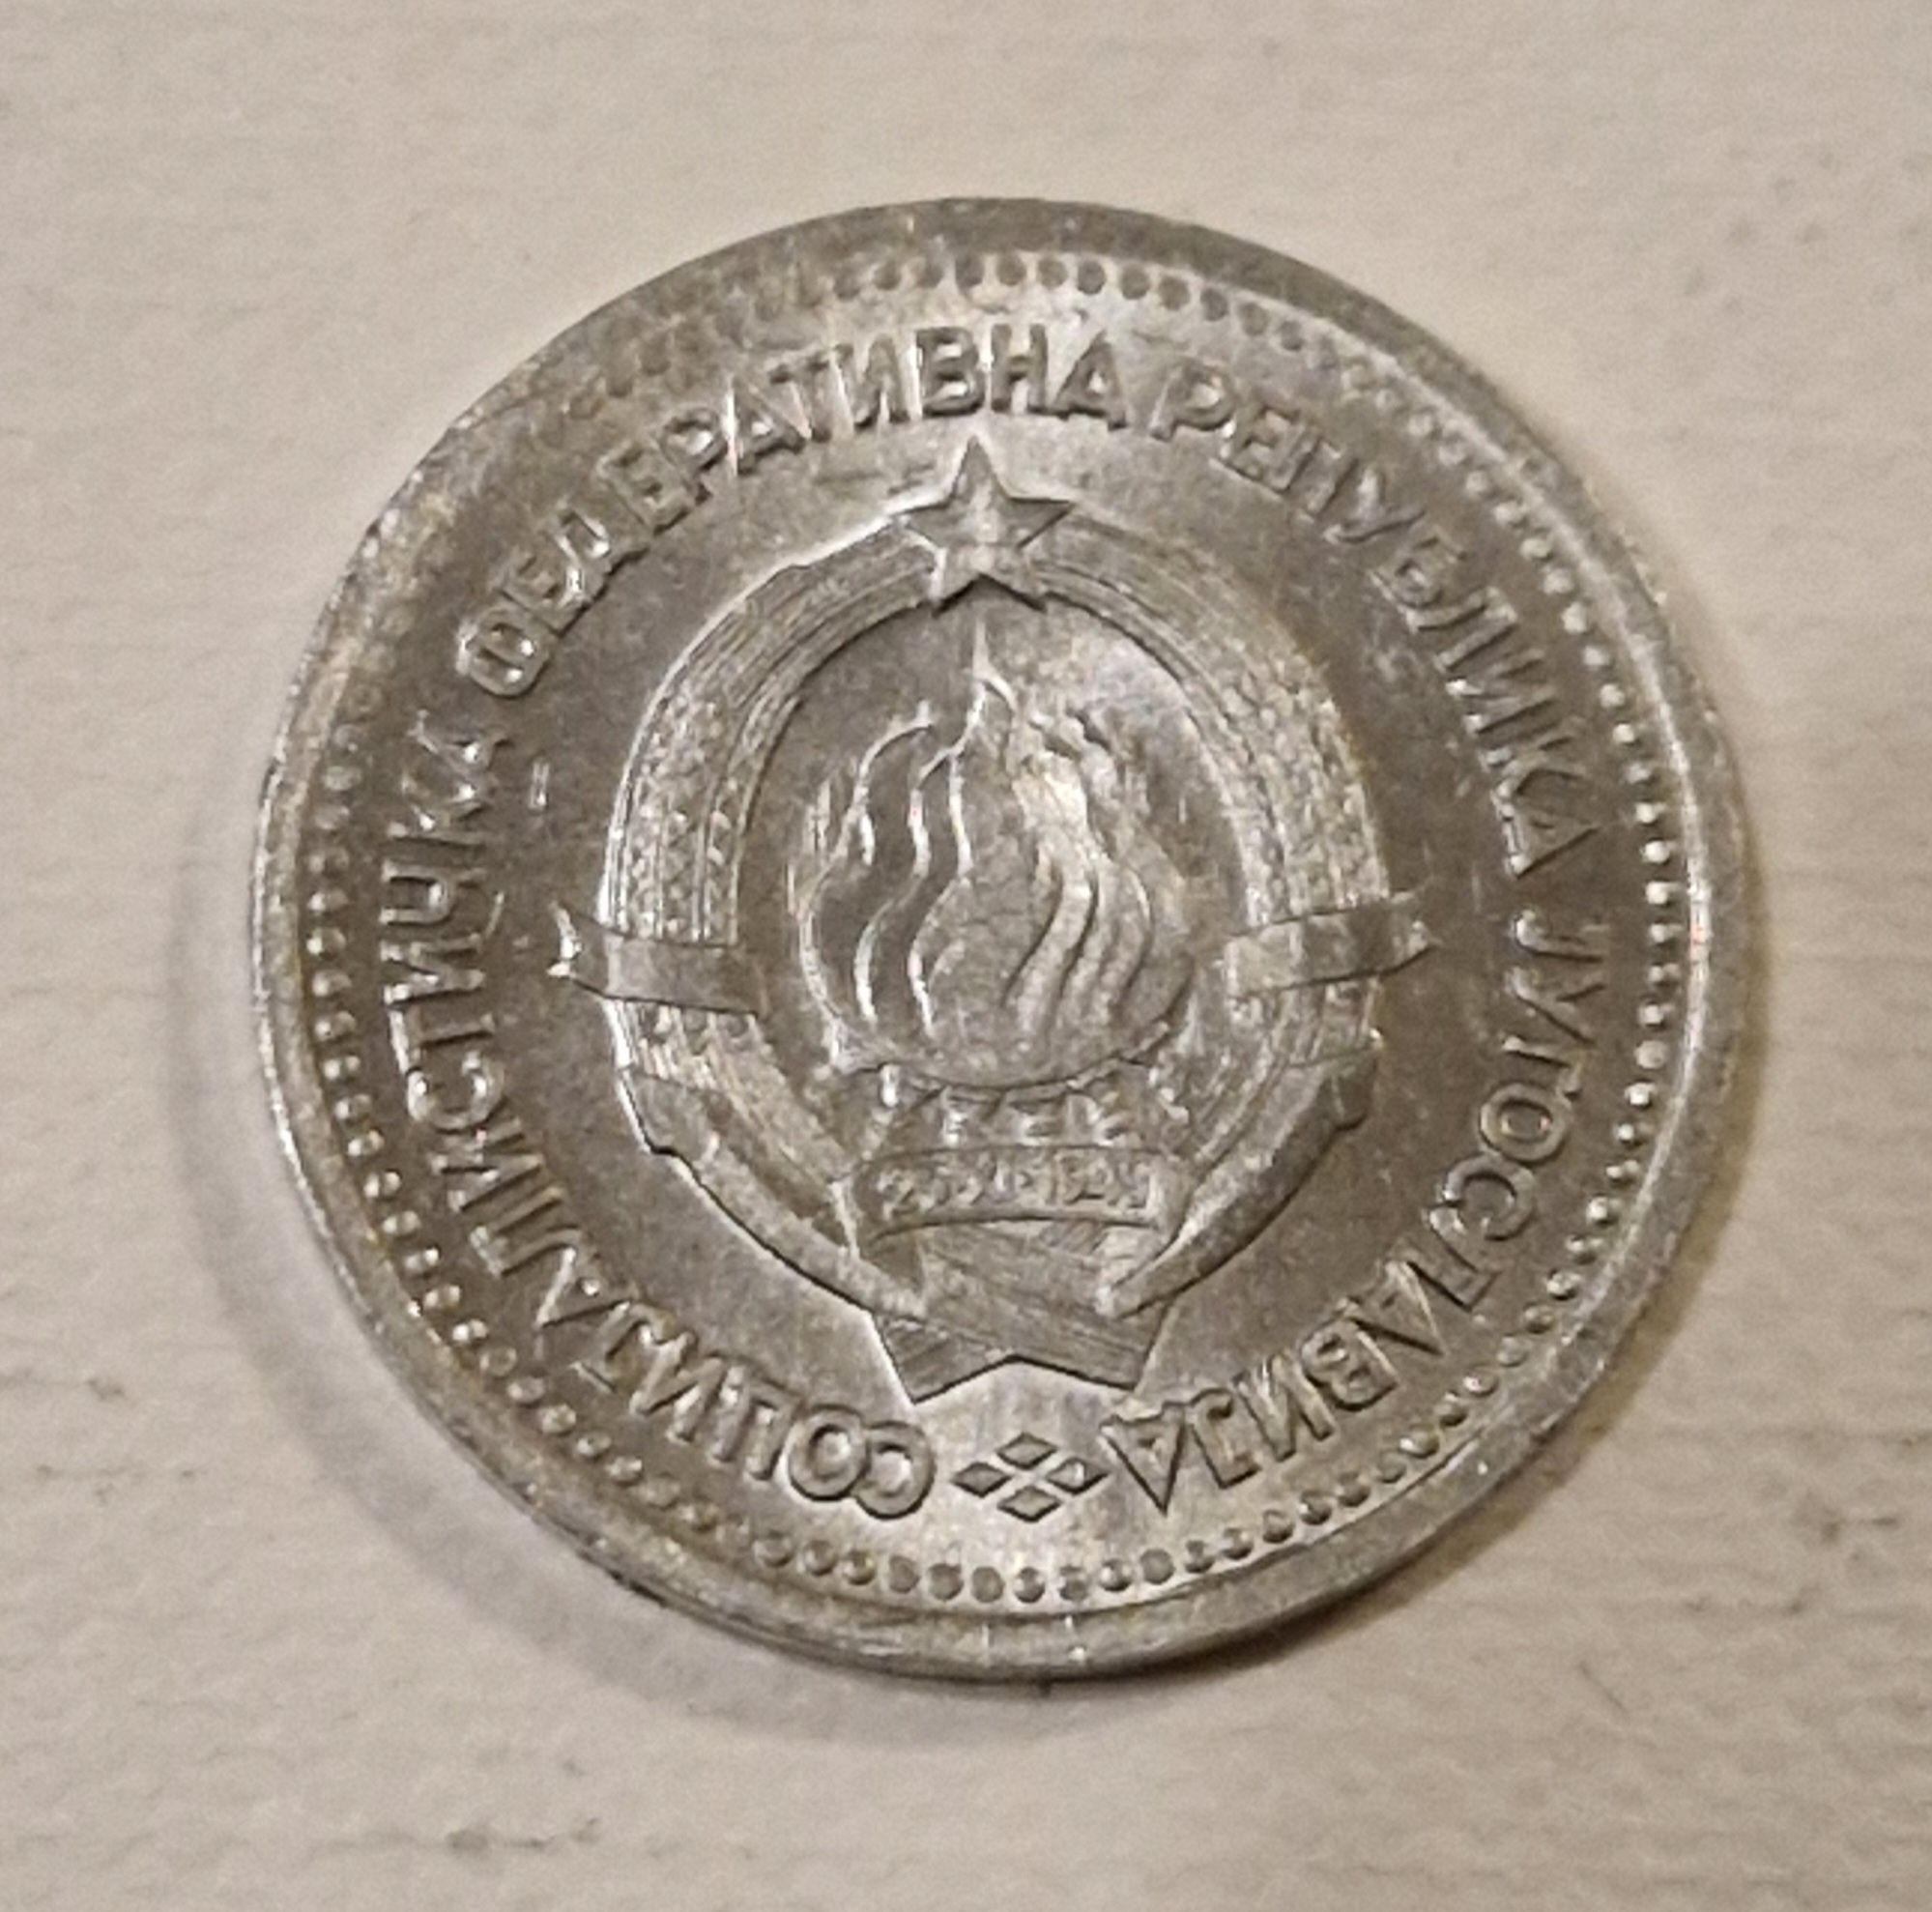 Moneta Jugosławia